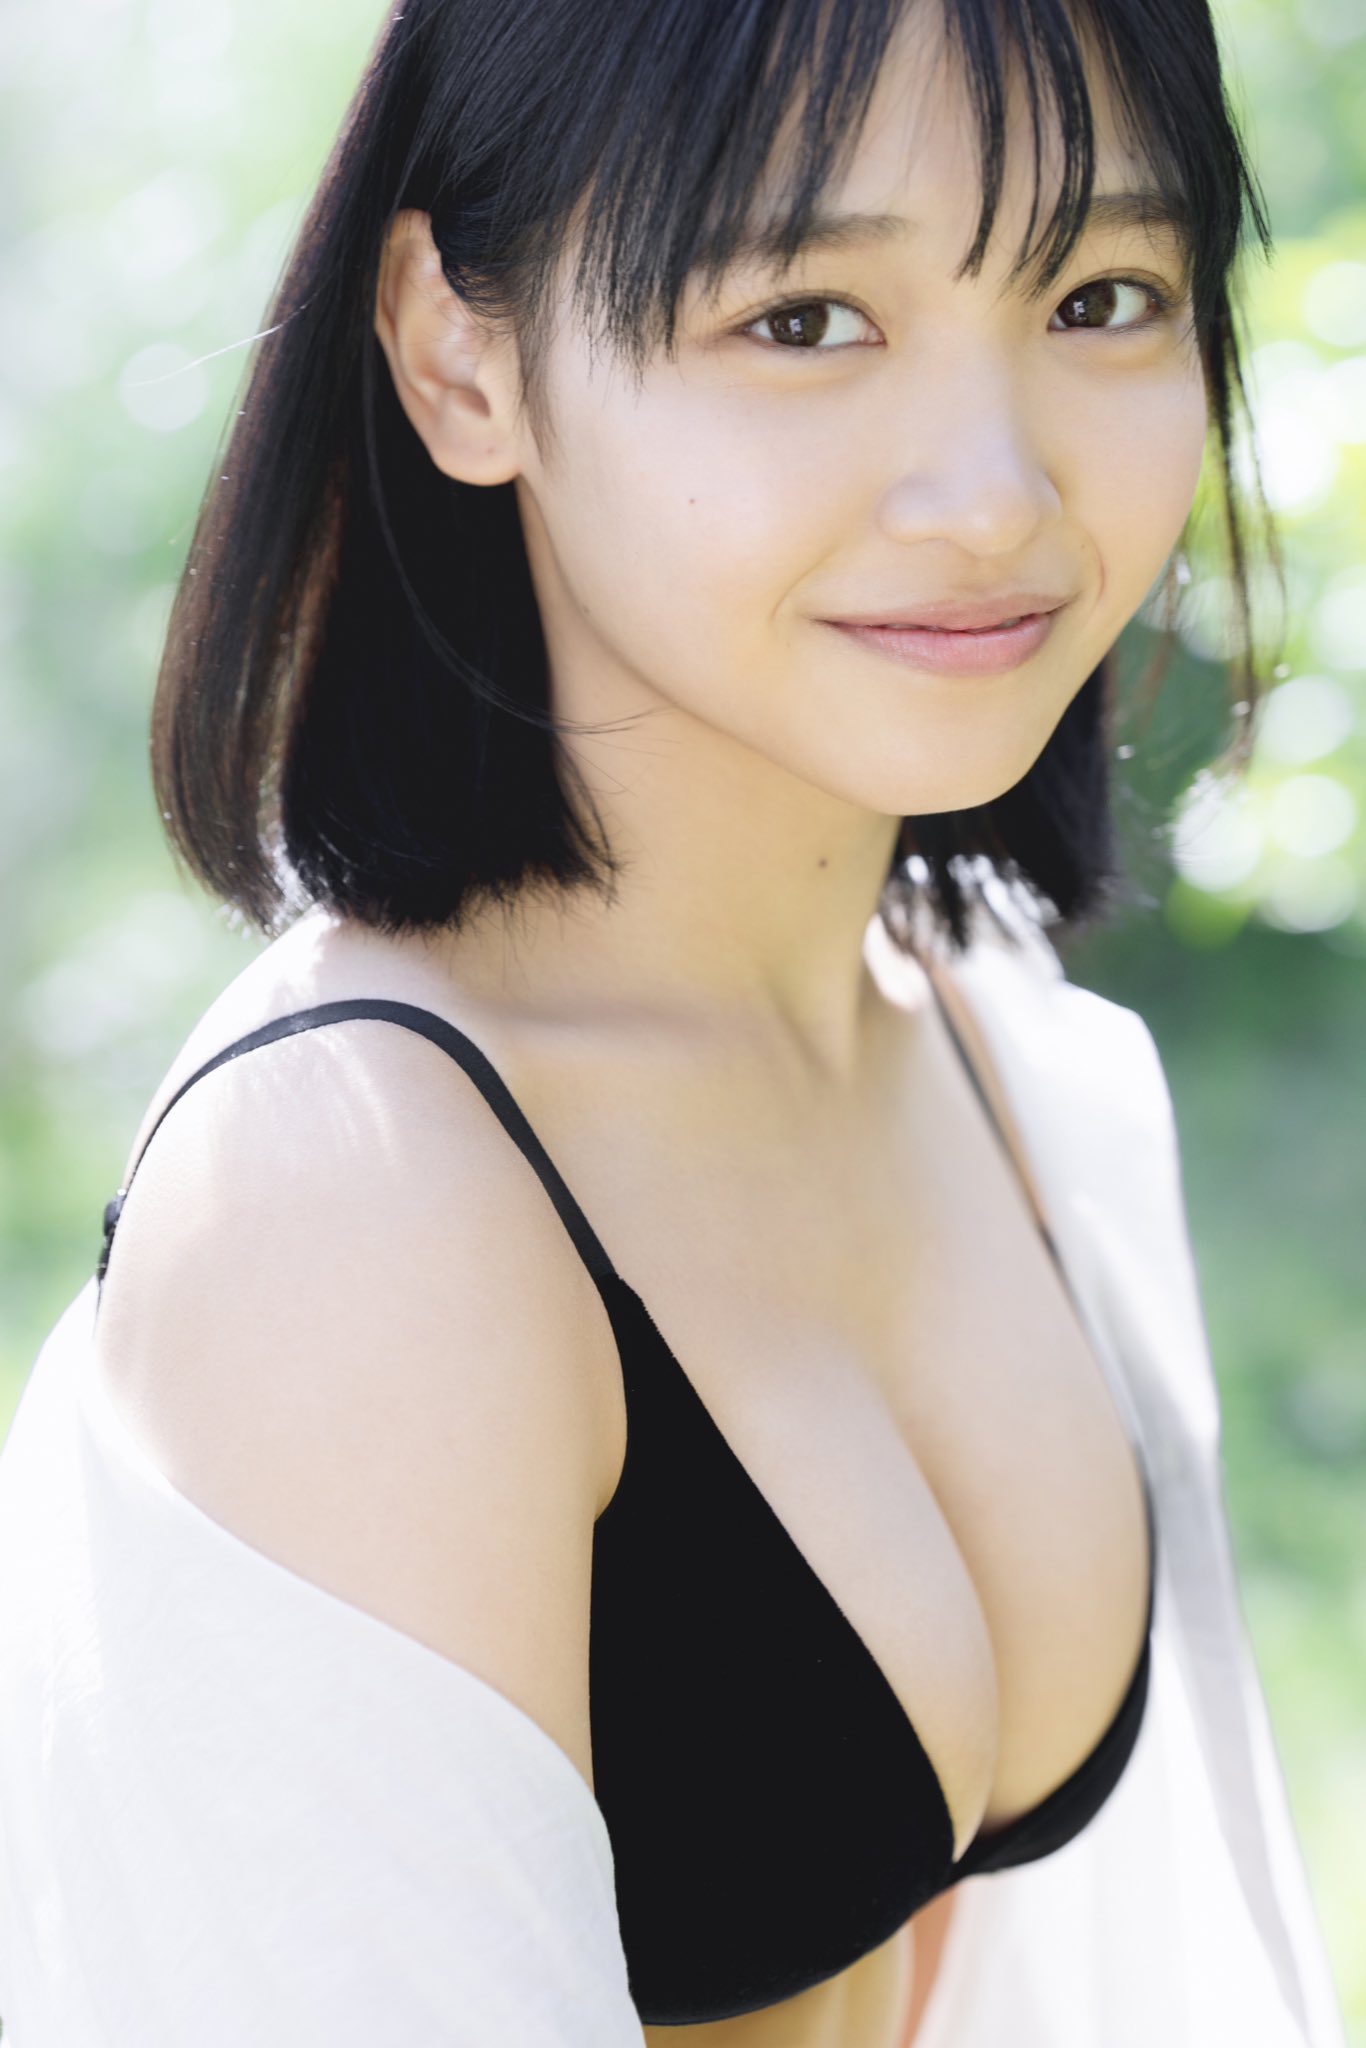 일본 2005년생 신인 그라비아 모델 키우치 노아